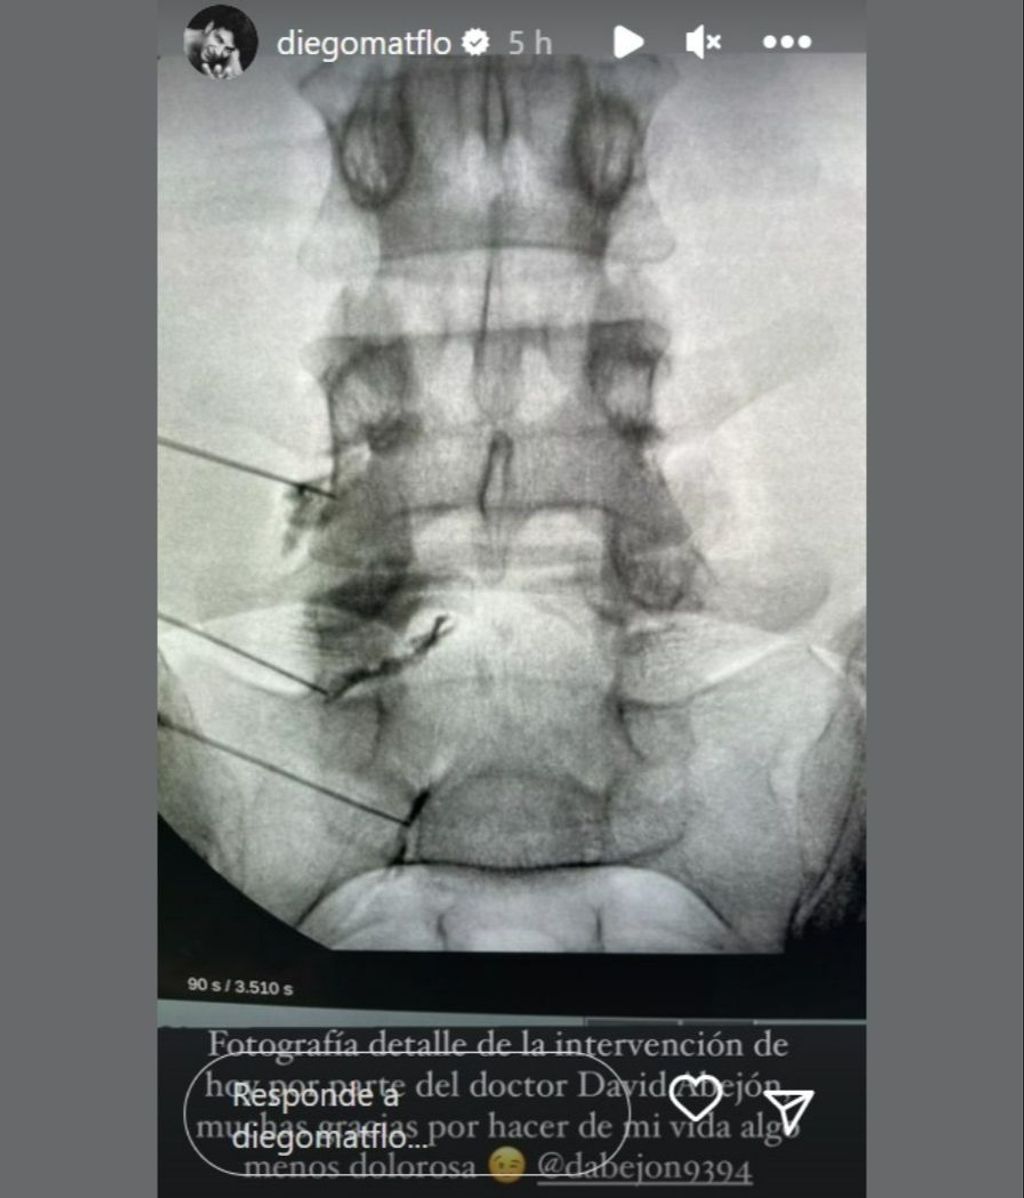 Diego Matamoros comparte una radiografía de su columna vertebral